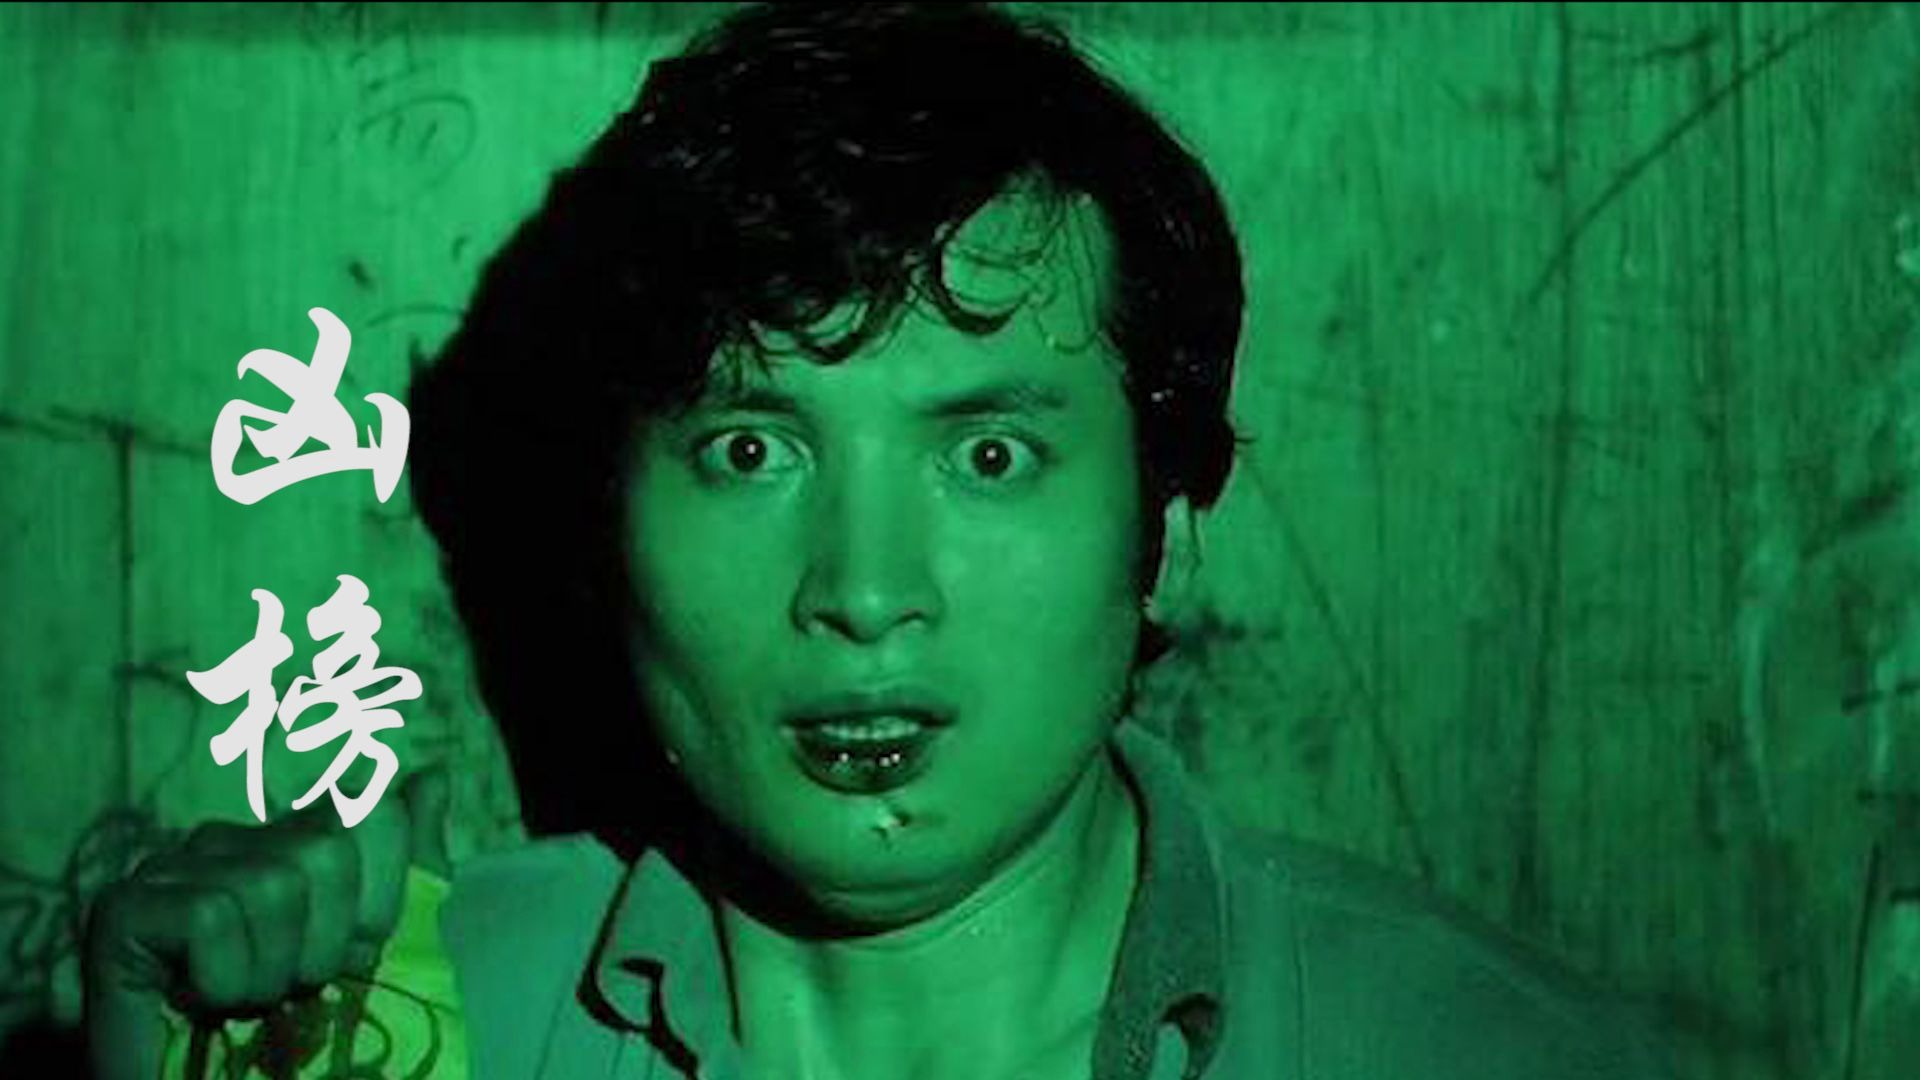 解说经典恐怖片《凶榜》 香港电影史上最吓人的电影之一